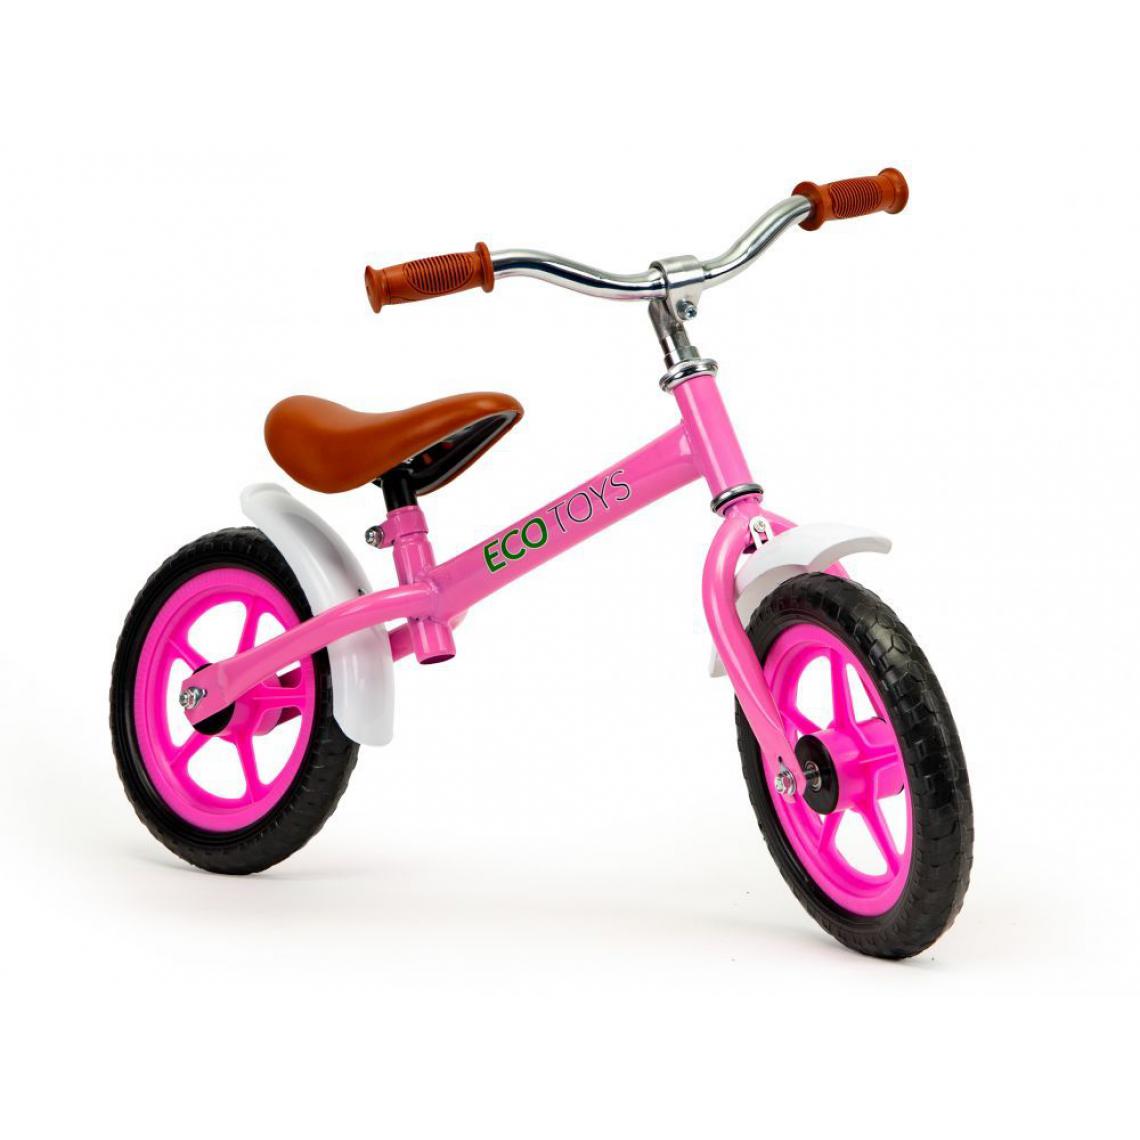 Hucoco - MSTORE | Draisienne avec garde-boue vélo d'enfant trotteur | De : 18 à 36 mois | Réglage en hauteur | Poignées antidérapantes - Rose - Voitures